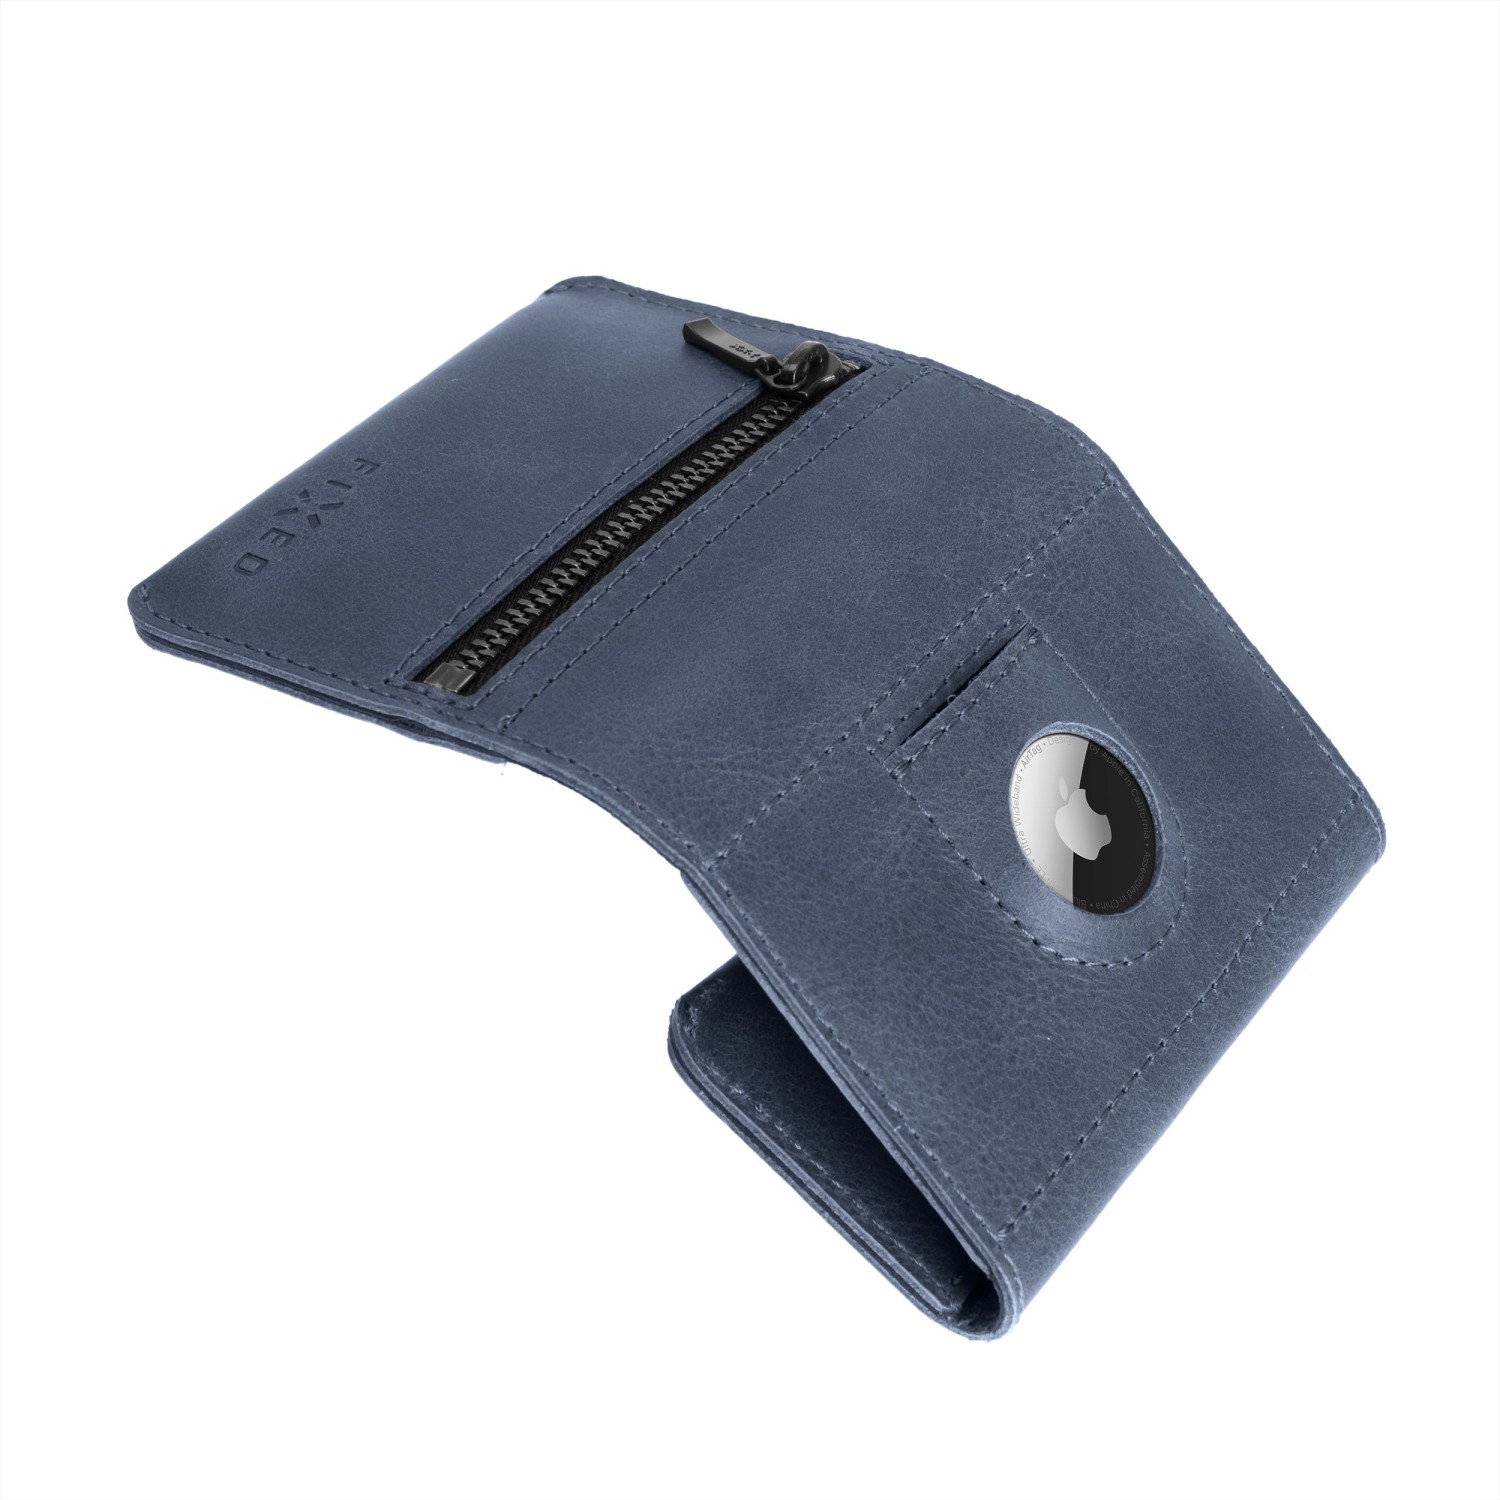 Kožená peněženka FIXED Tripple Wallet for AirTag z pravé hovězí kůže, modrá.
Peněženka FIXED Wallet představuje český výrobek, který vzniká kompletně steh za stehem v Prostějovské šicí dílně s mnohaletou tradicí.
Vlastnosti:

kožená minimalistická peněženka s kapsou pro Apple AirTag
každý kus má jedinečný vzhled
ručně šitá s láskou v Prostějově
časem získává nezaměnitelnou patinu
ideální...